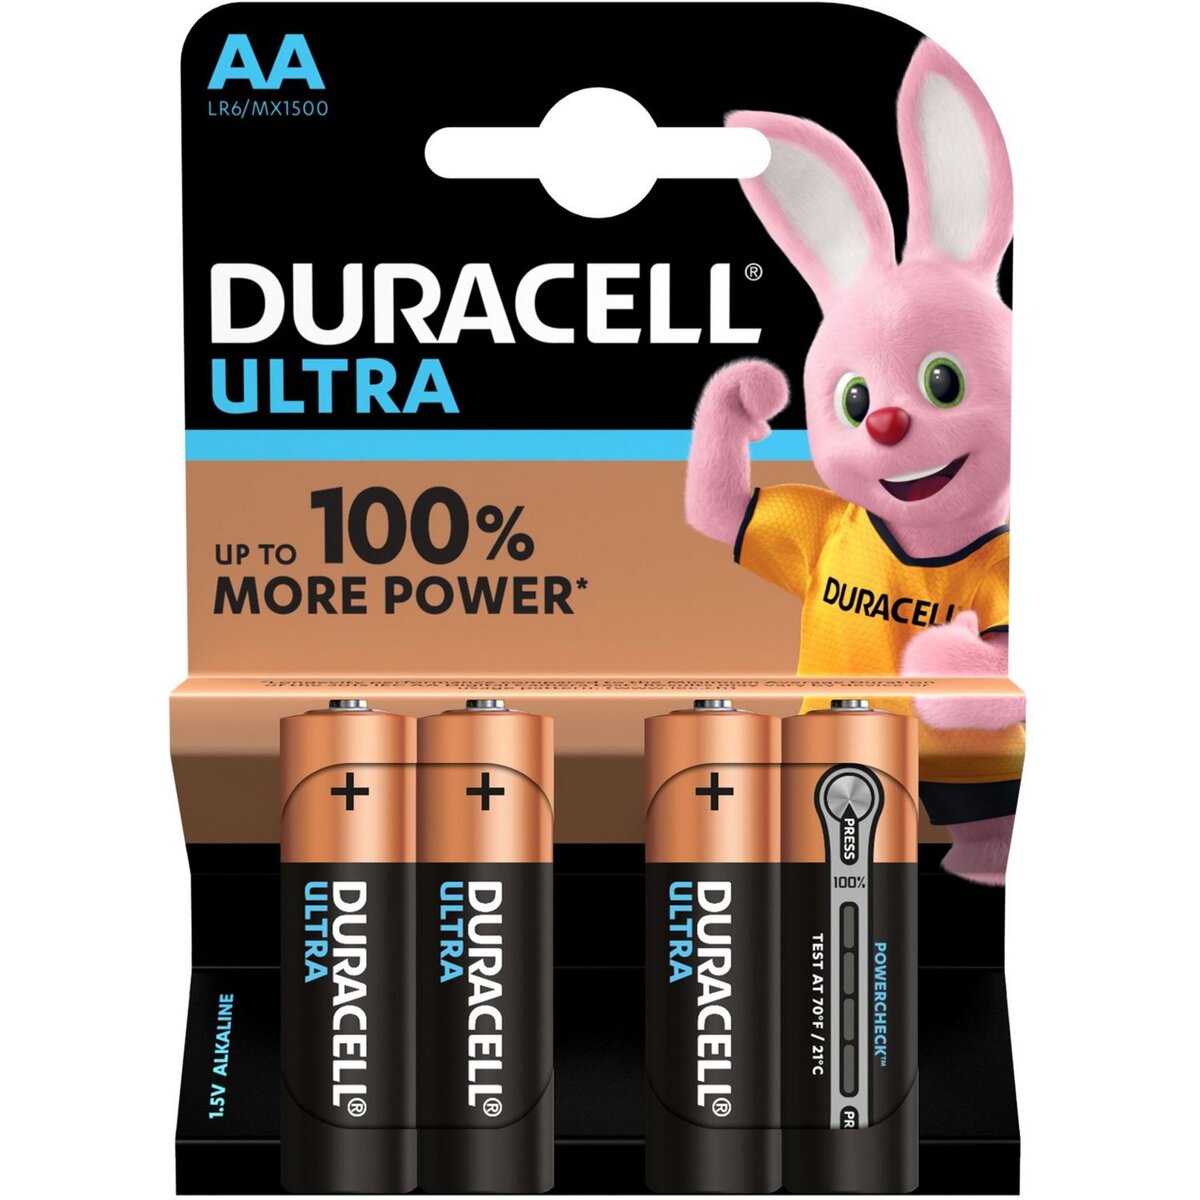 DURACELL Piles AA/LR06 ultra power